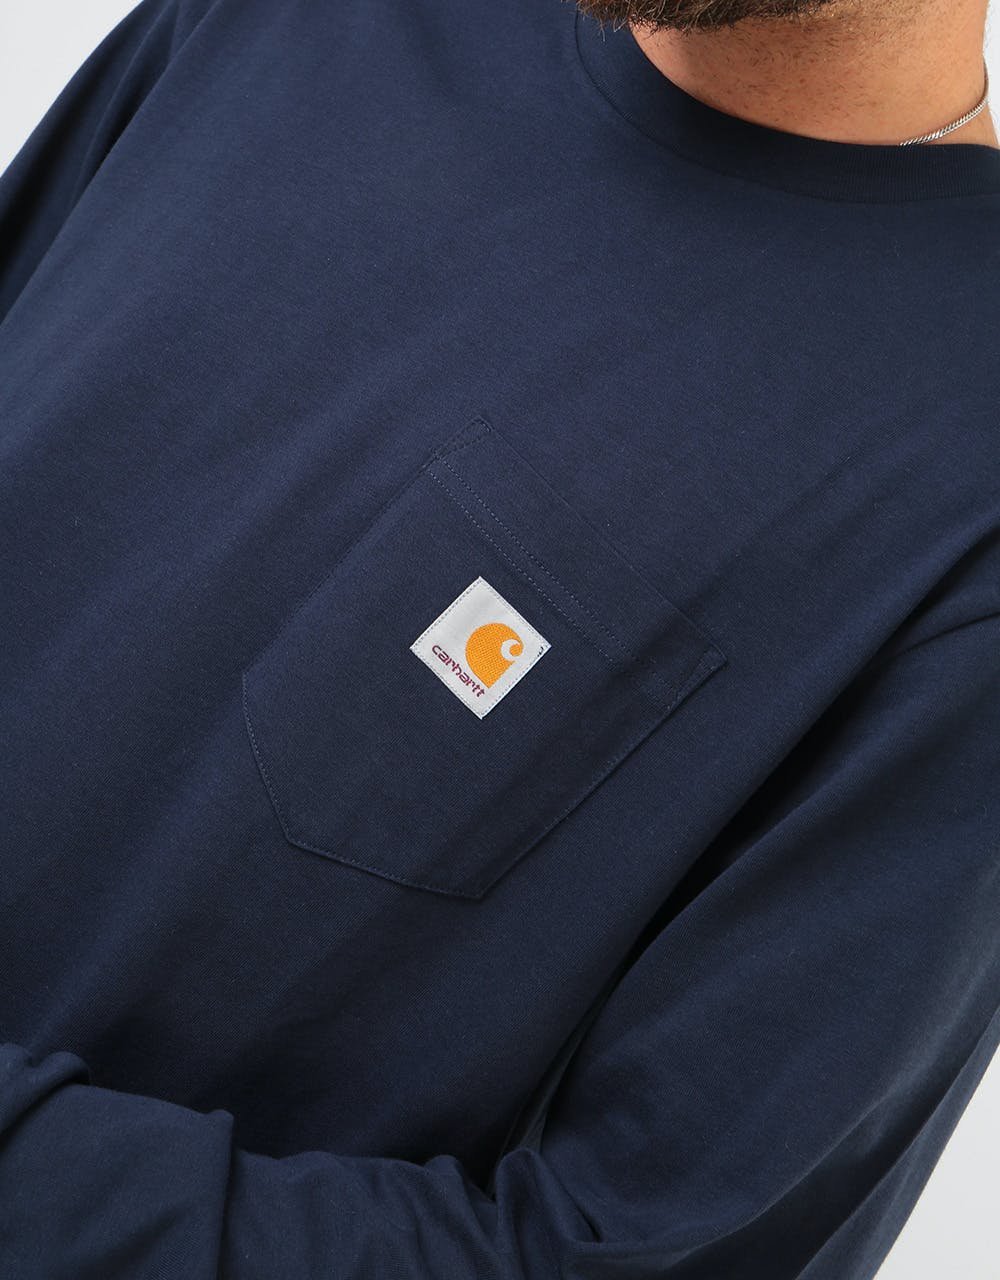 Carhartt WIP L/S Pocket T-Shirt - Dark Navy